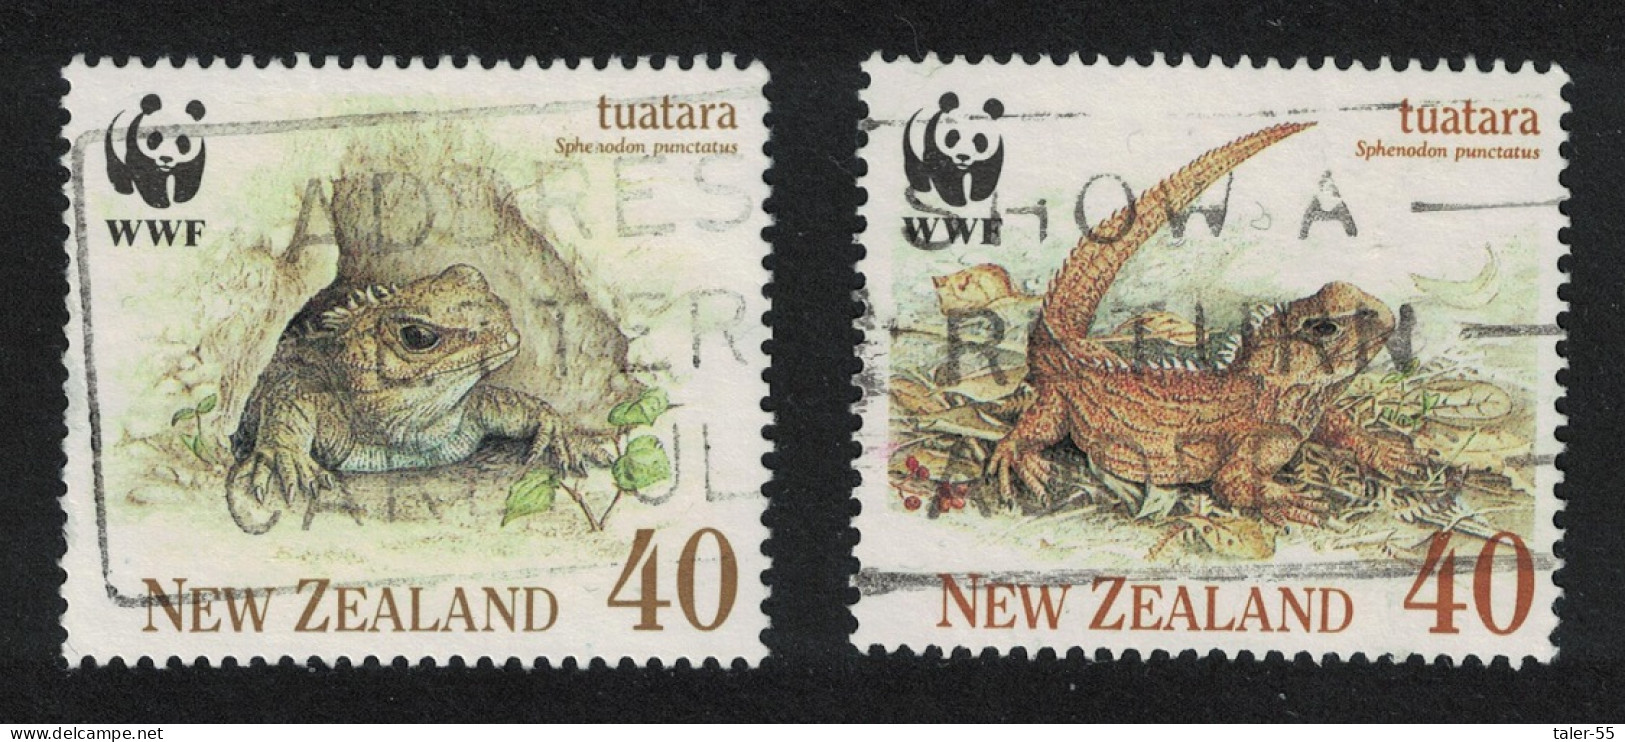 New Zealand WWF Tuatara 2V 1991 Canc SG#1590-1593 MI#1160-1163 Sc#1023-1026 - Oblitérés